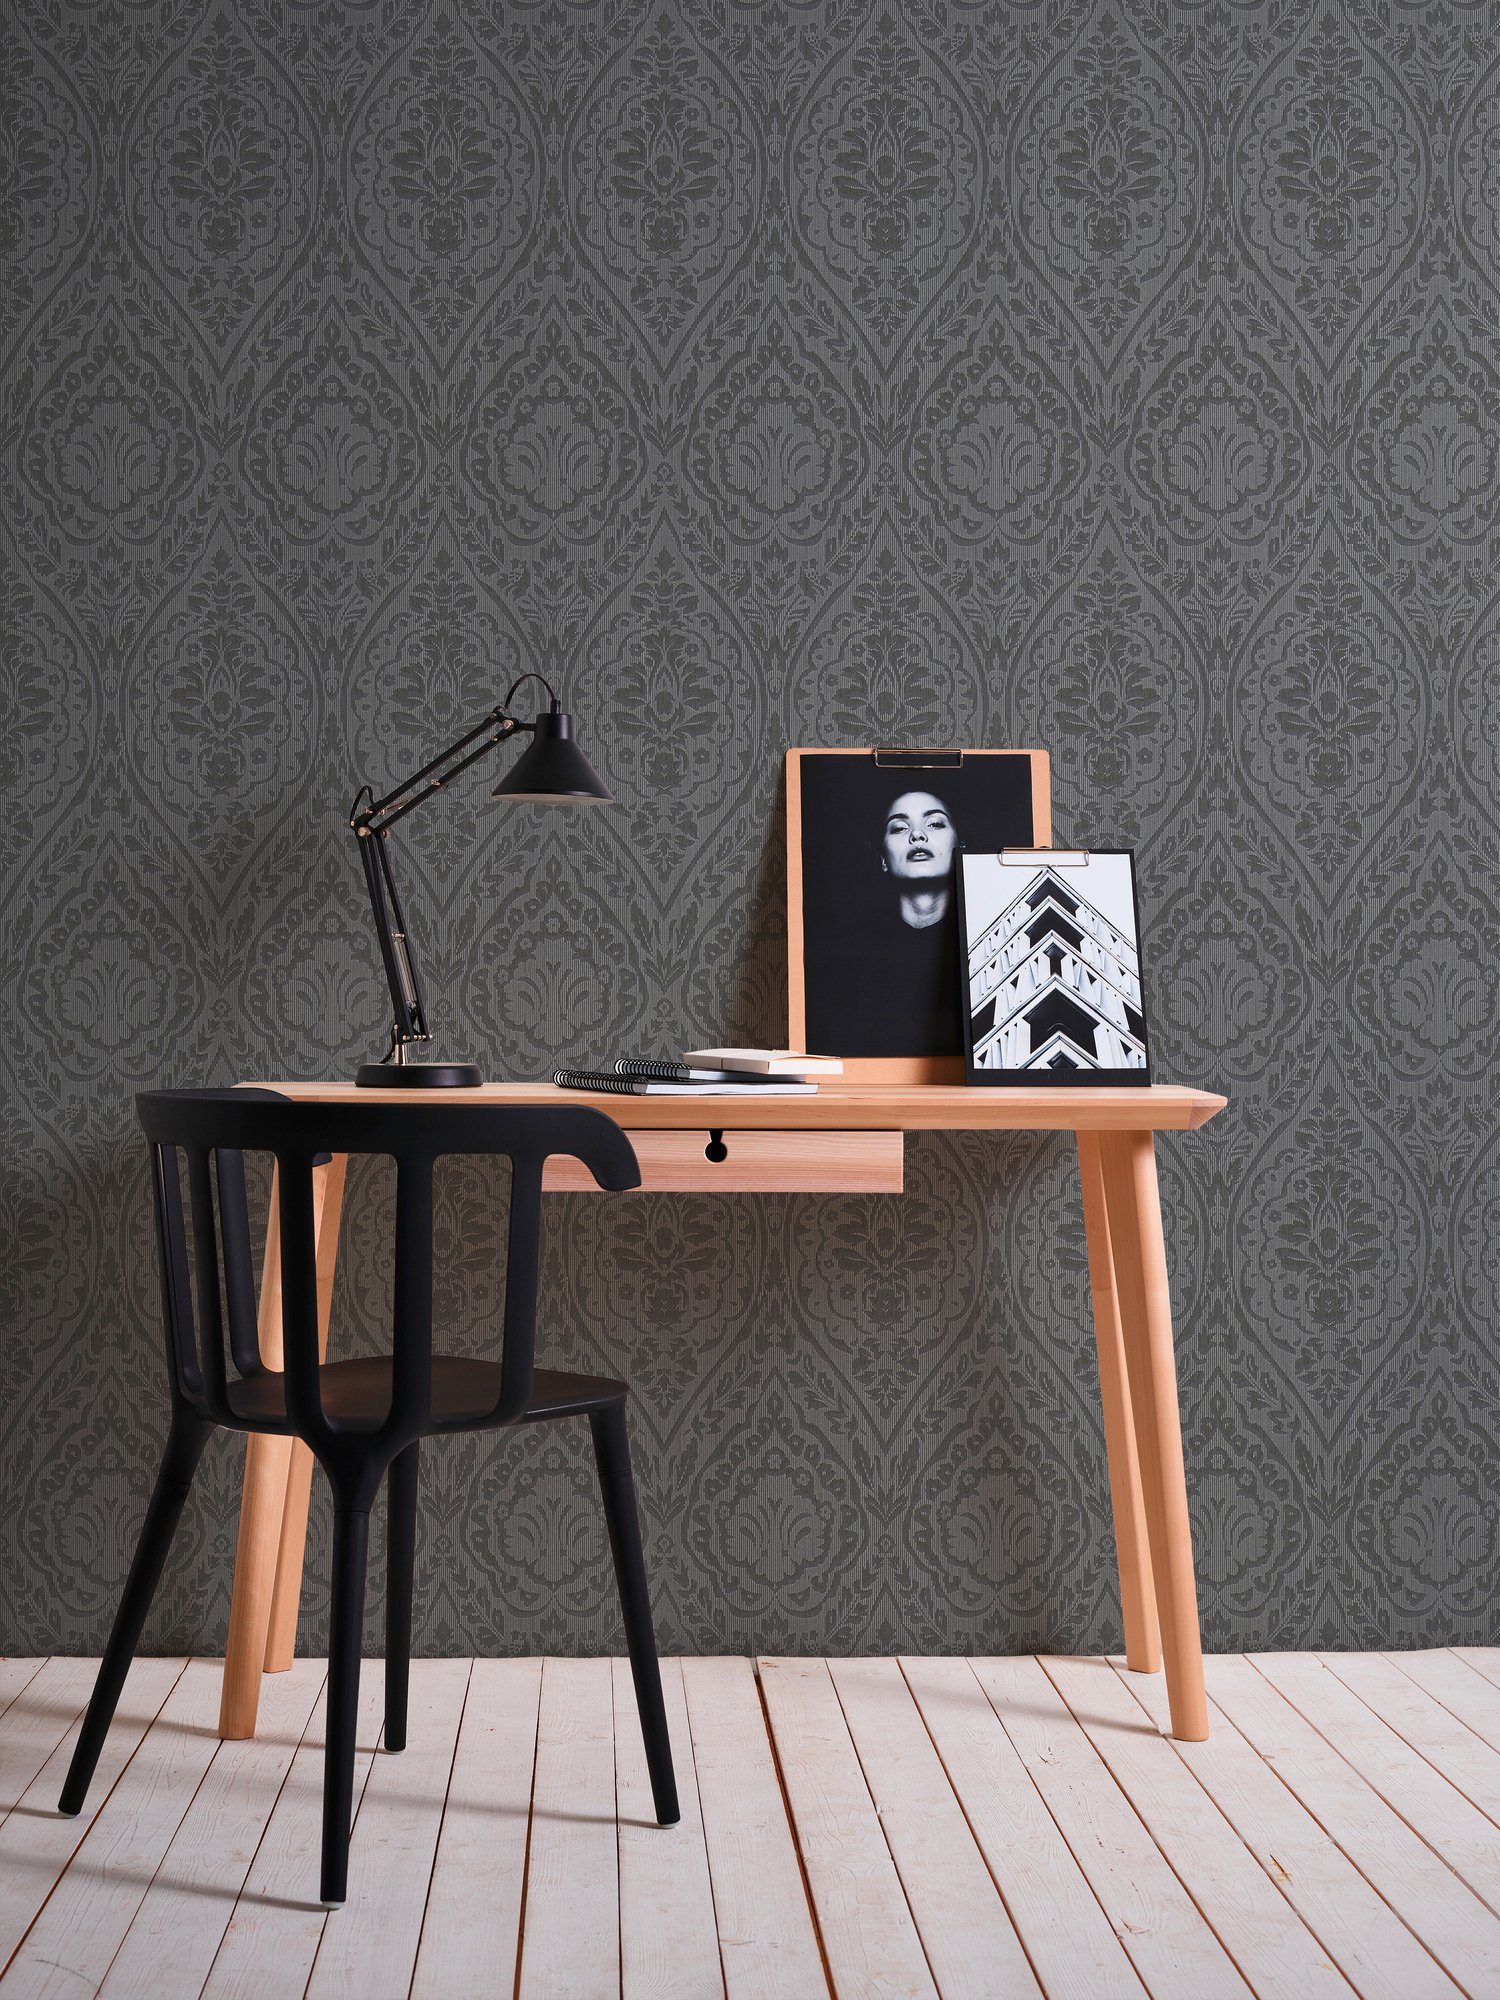 Tessuto, Architects Barock, Textiltapete Tapete Streifen Création braun/schwarz A.S. samtig, Paper